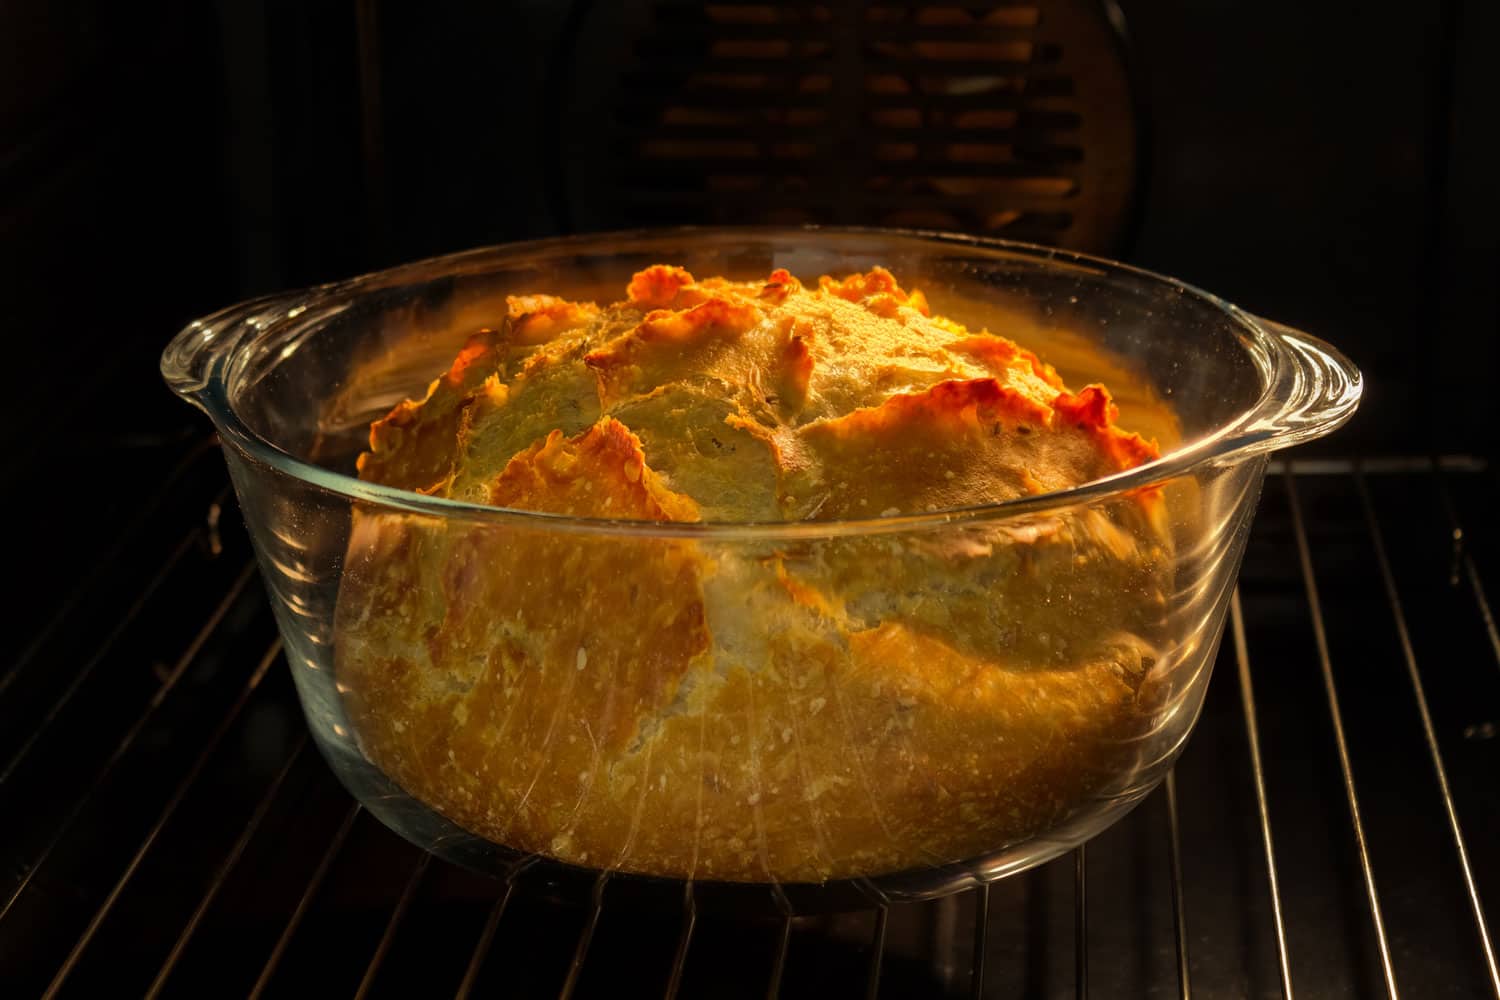 freshly baked loaf in glass loaf pan